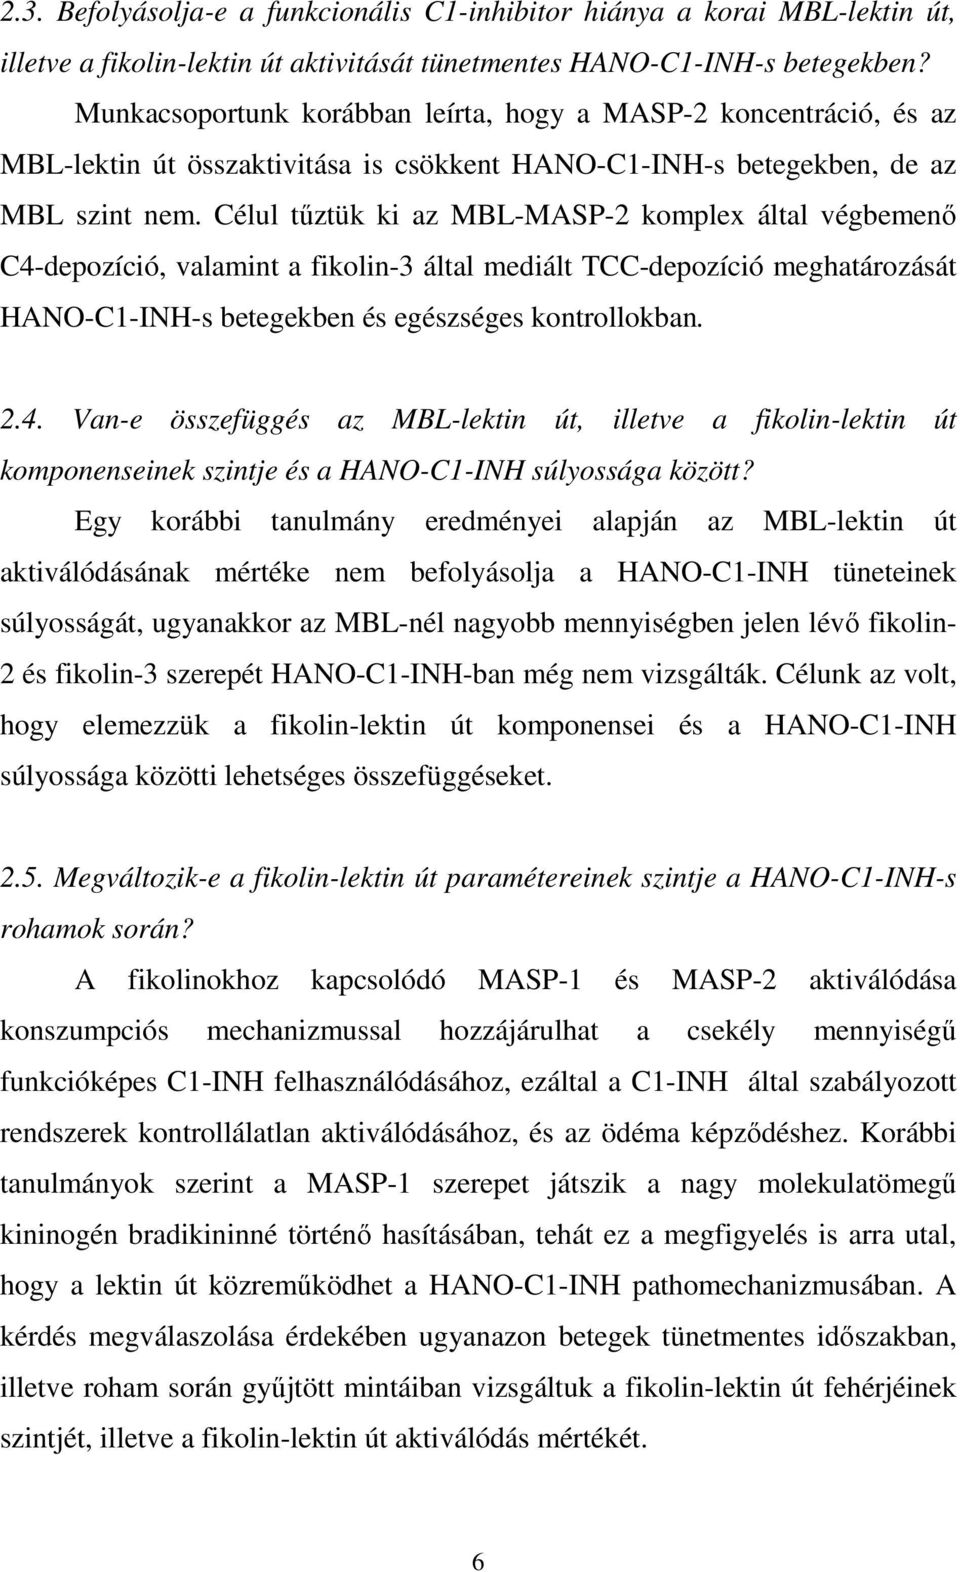 Célul tűztük ki az MBL-MASP-2 komplex által végbemenő C4-depozíció, valamint a fikolin-3 által mediált TCC-depozíció meghatározását HANO-C1-INH-s betegekben és egészséges kontrollokban. 2.4. Van-e összefüggés az MBL-lektin út, illetve a fikolin-lektin út komponenseinek szintje és a HANO-C1-INH súlyossága között?